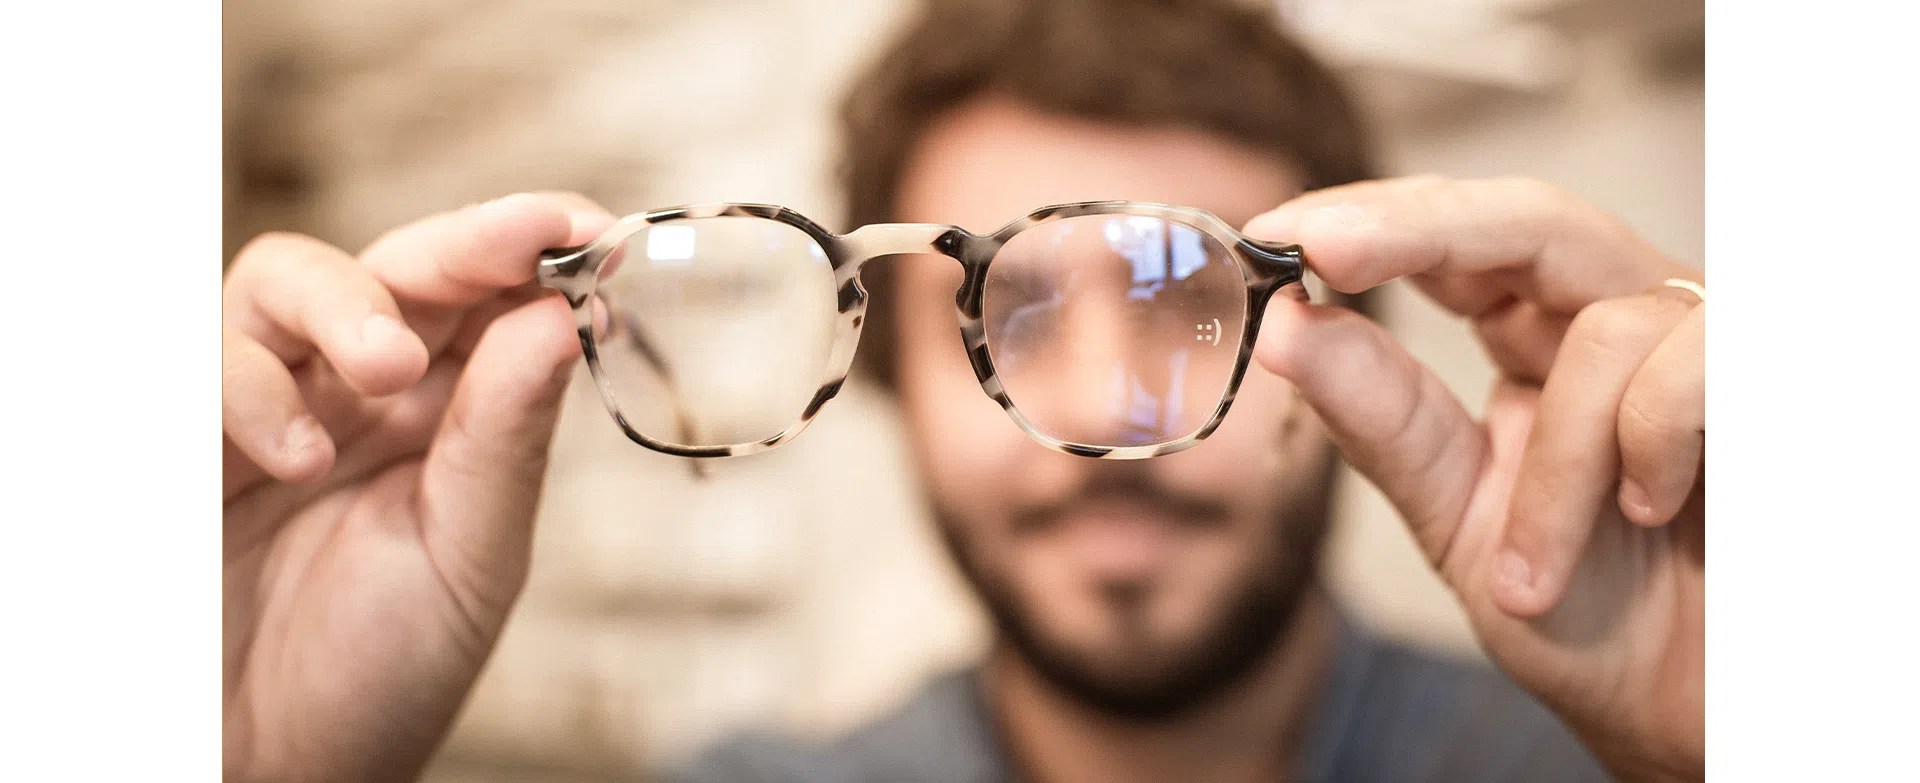 um homen olhando um oculos zerezes